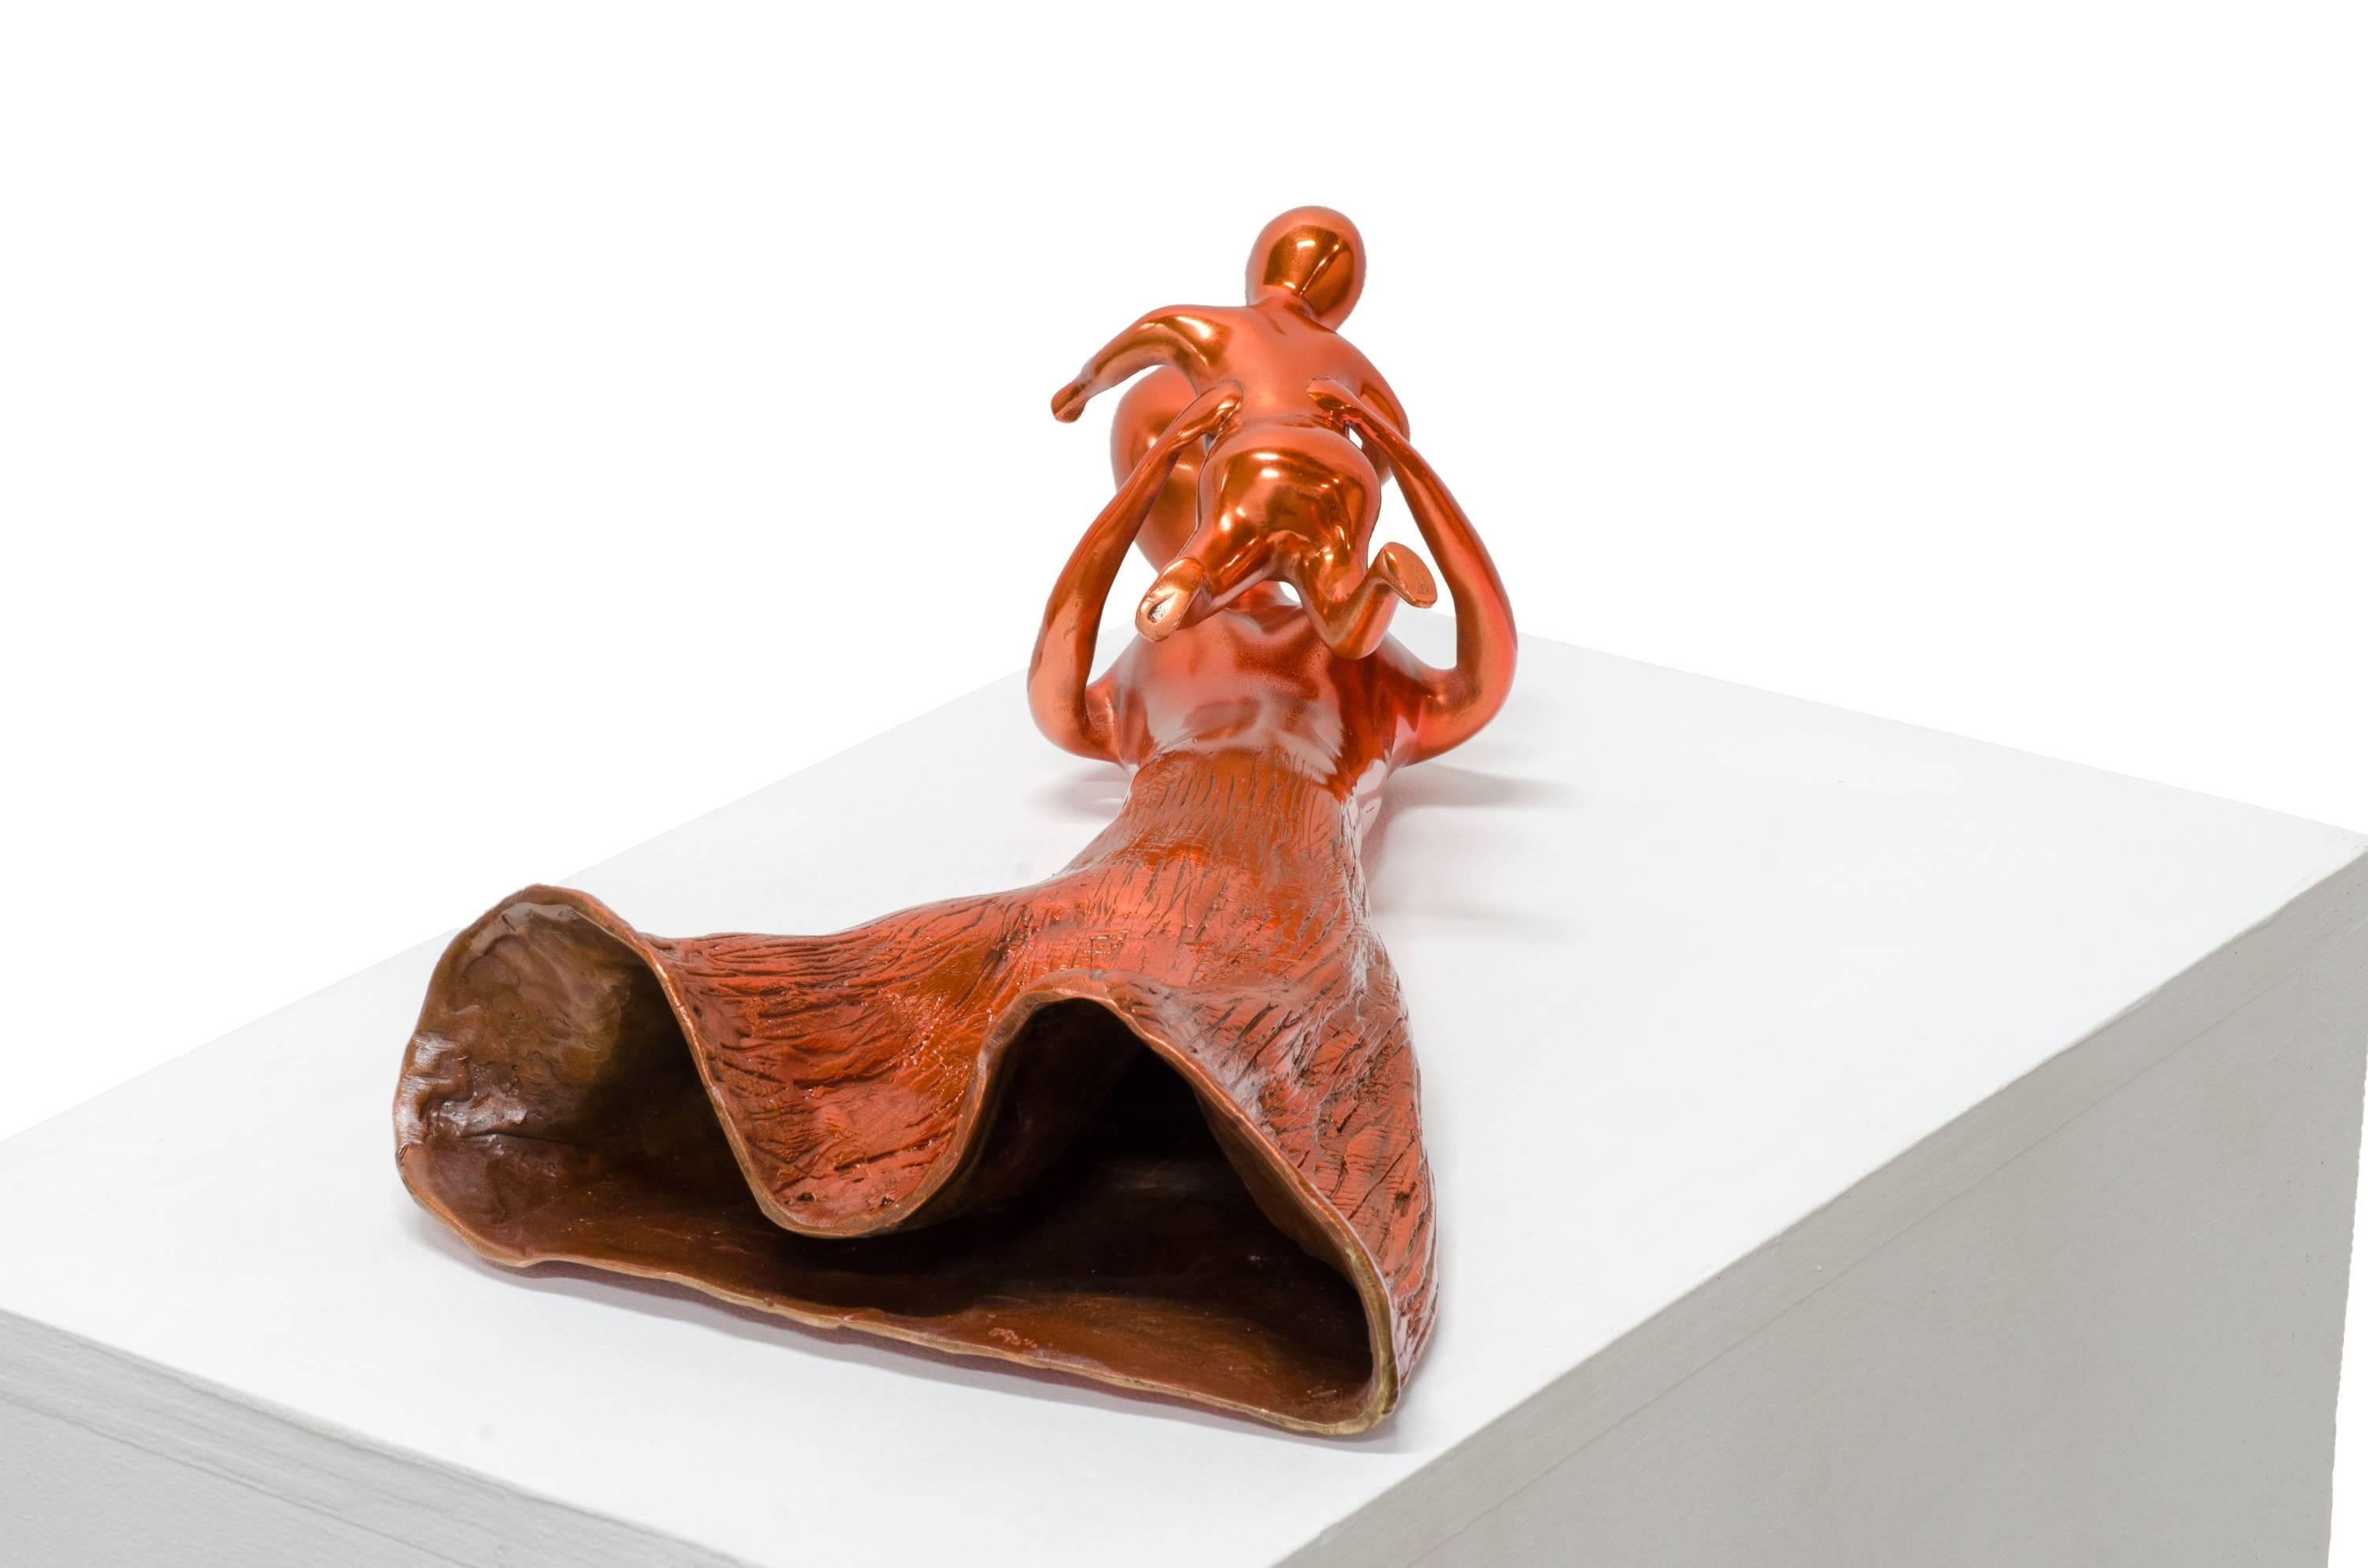 Playing - Sculpture by Beatriz Gerenstein